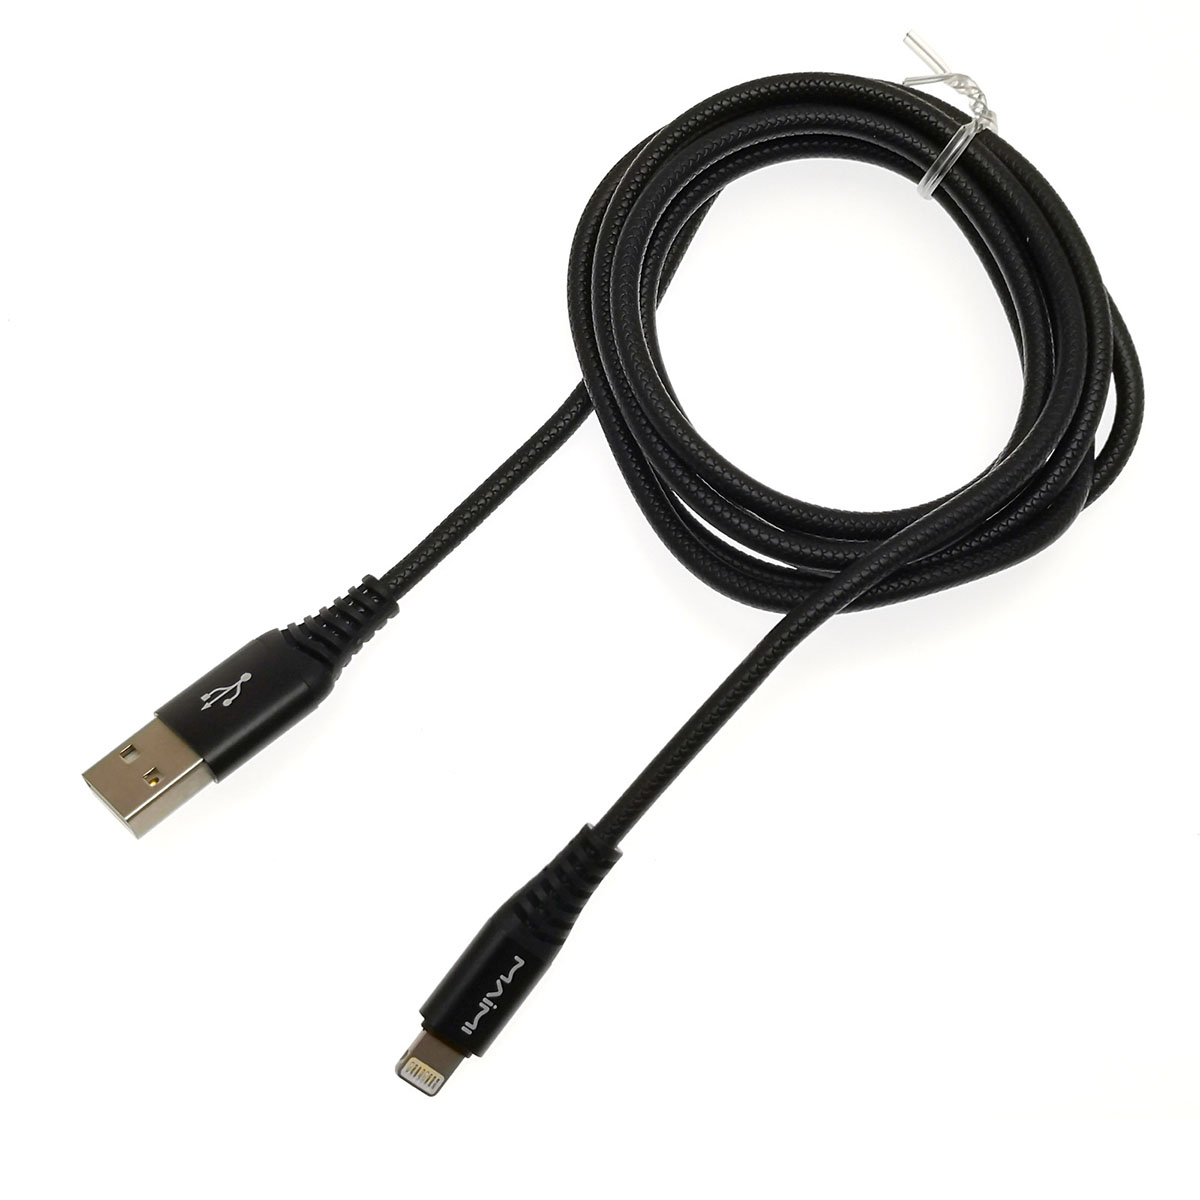 MAIMI X18 Дата-кабель APPLE Lightning 8-pin iOS, 3.3A, длина 1.5 метра, цвет черный.